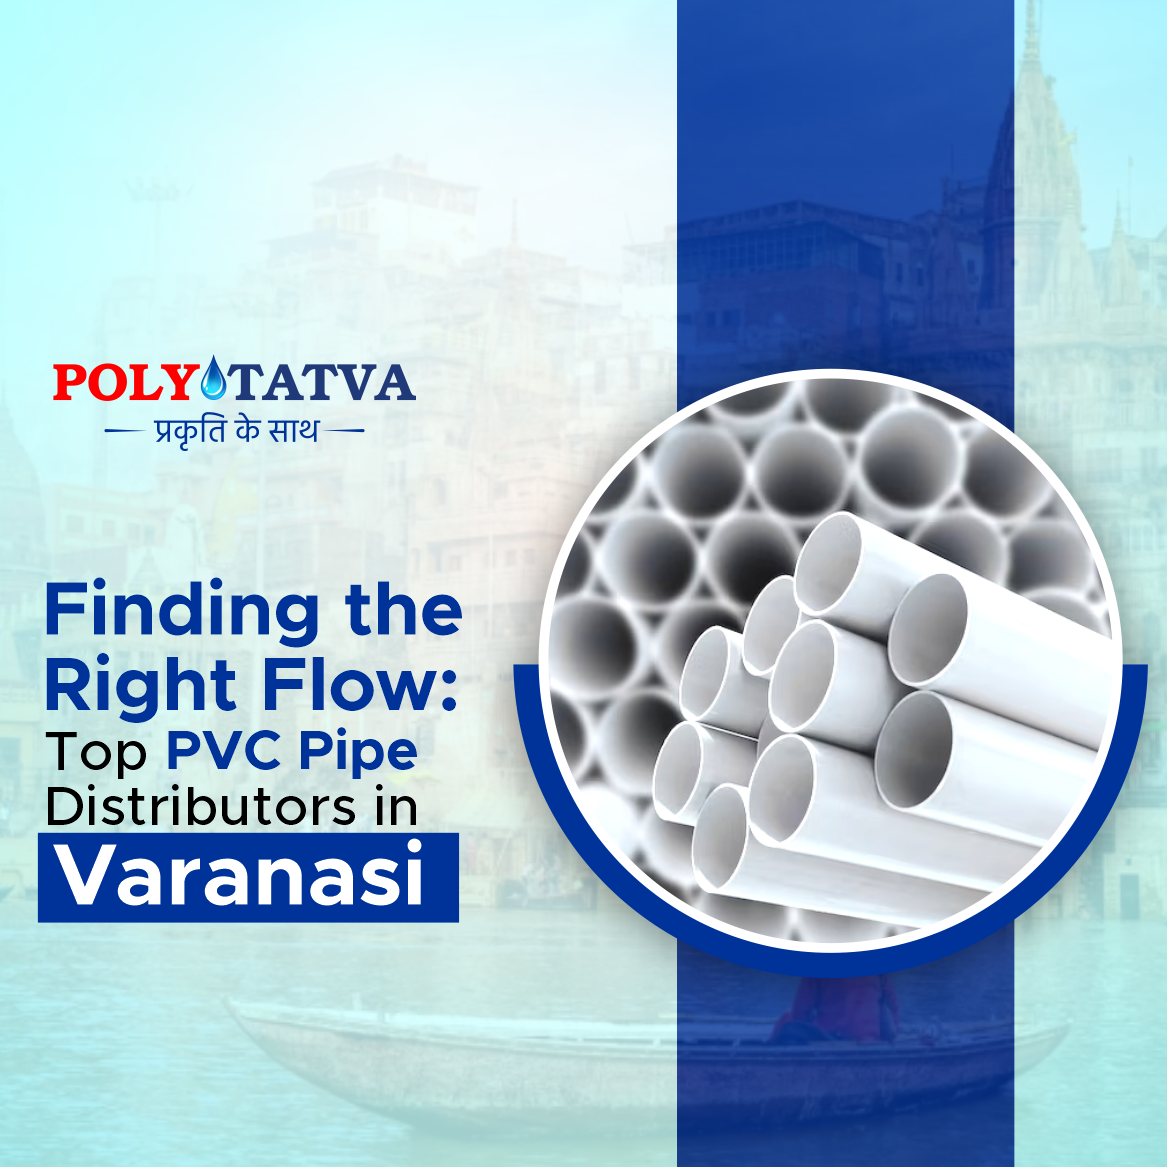 Top PVC Pipe Distributor in Varanasi